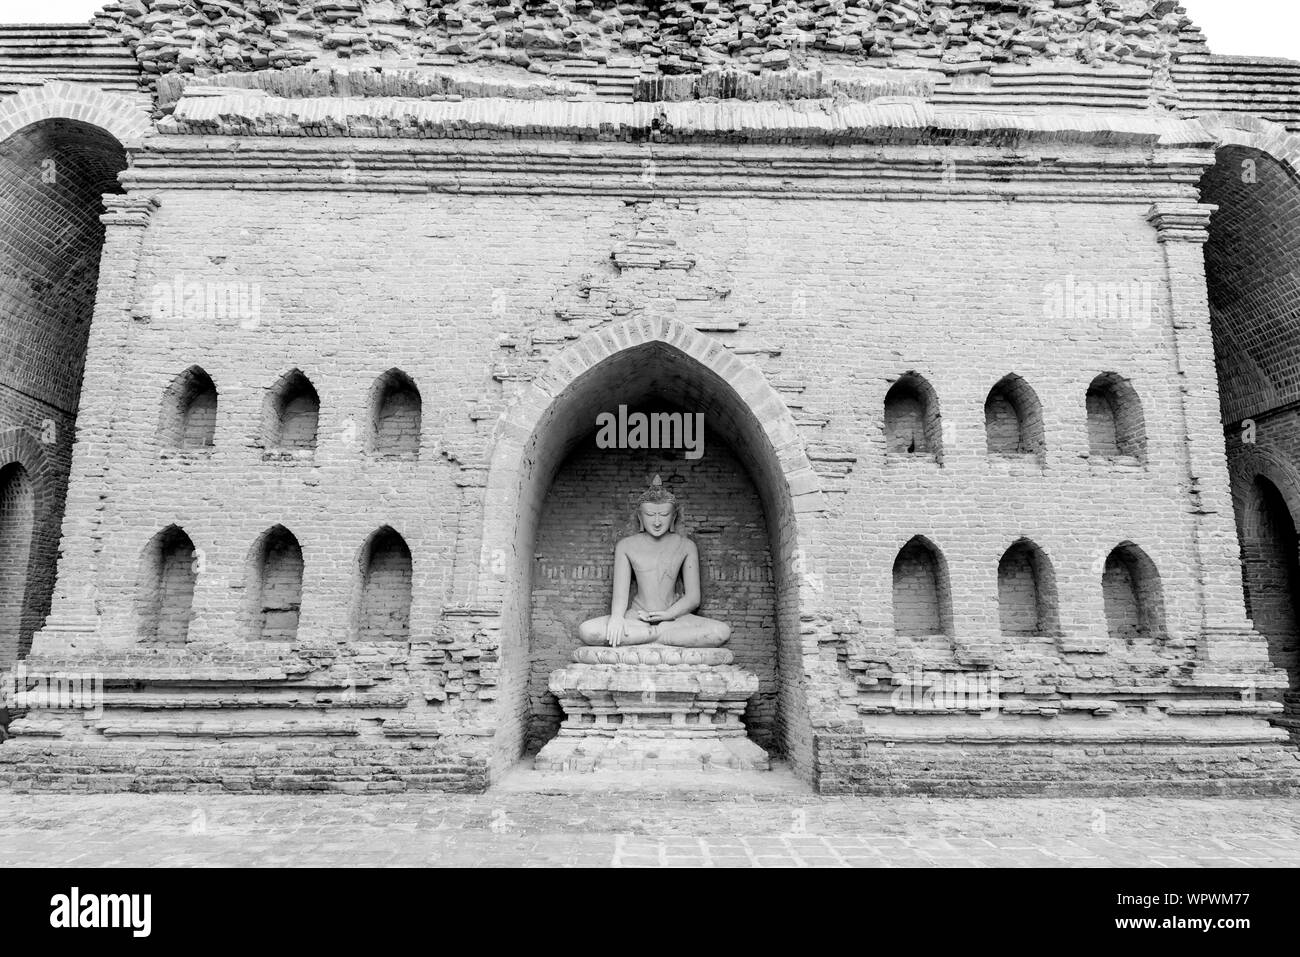 Immagine frontale di straordinaria statua del Buddha in rovina del tempio buddista a Bagan parco archeologico in Myanmar Foto Stock